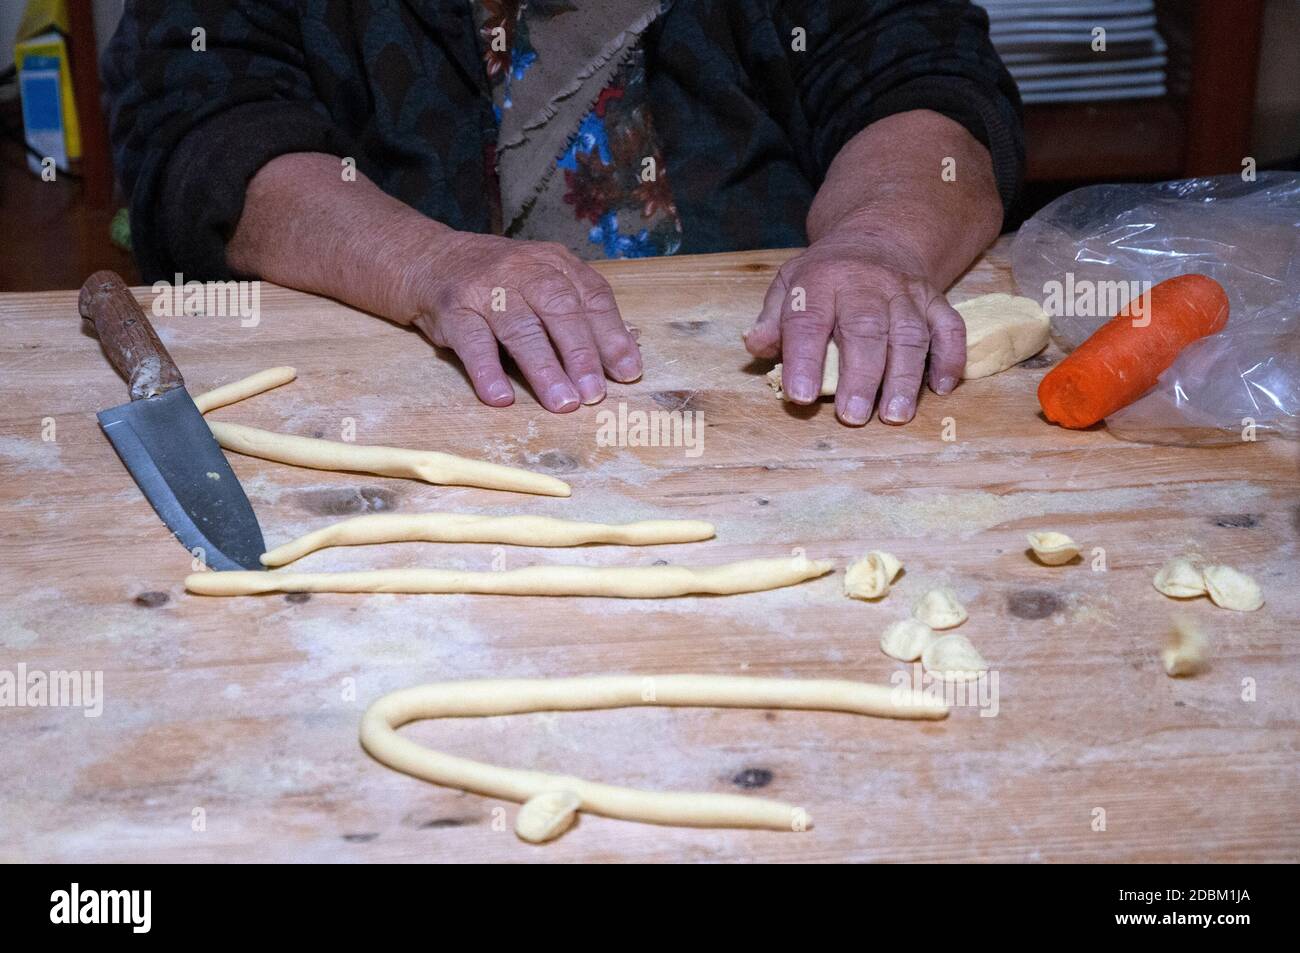 Bari vecchia - un momento della lavorazione delle orecchiette - Pasta italiana fatta a mano Foto Stock